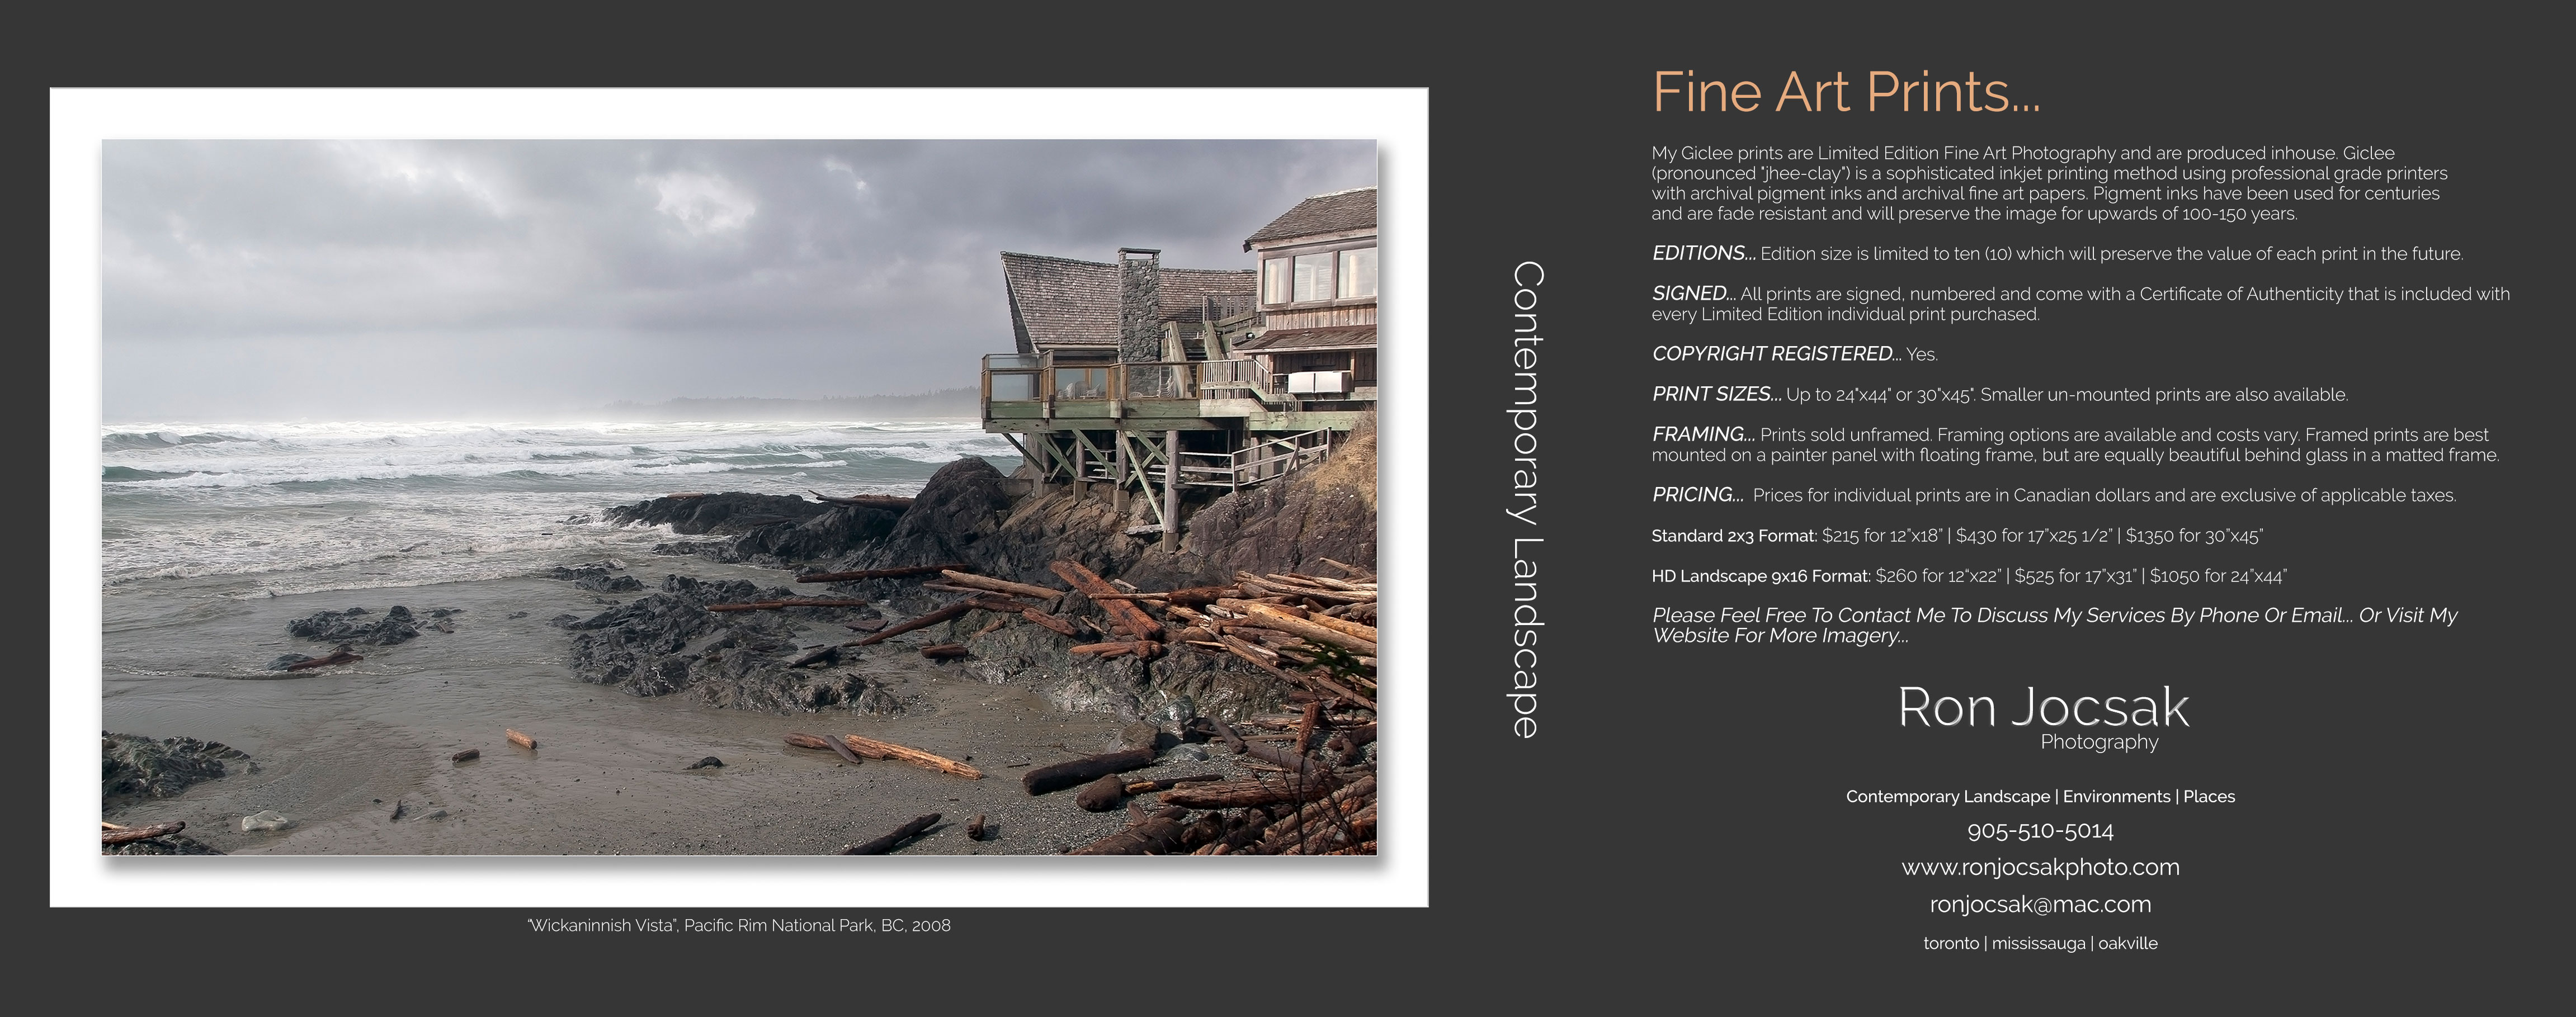 Portfolio_Flyer-Side-2-Landscapes